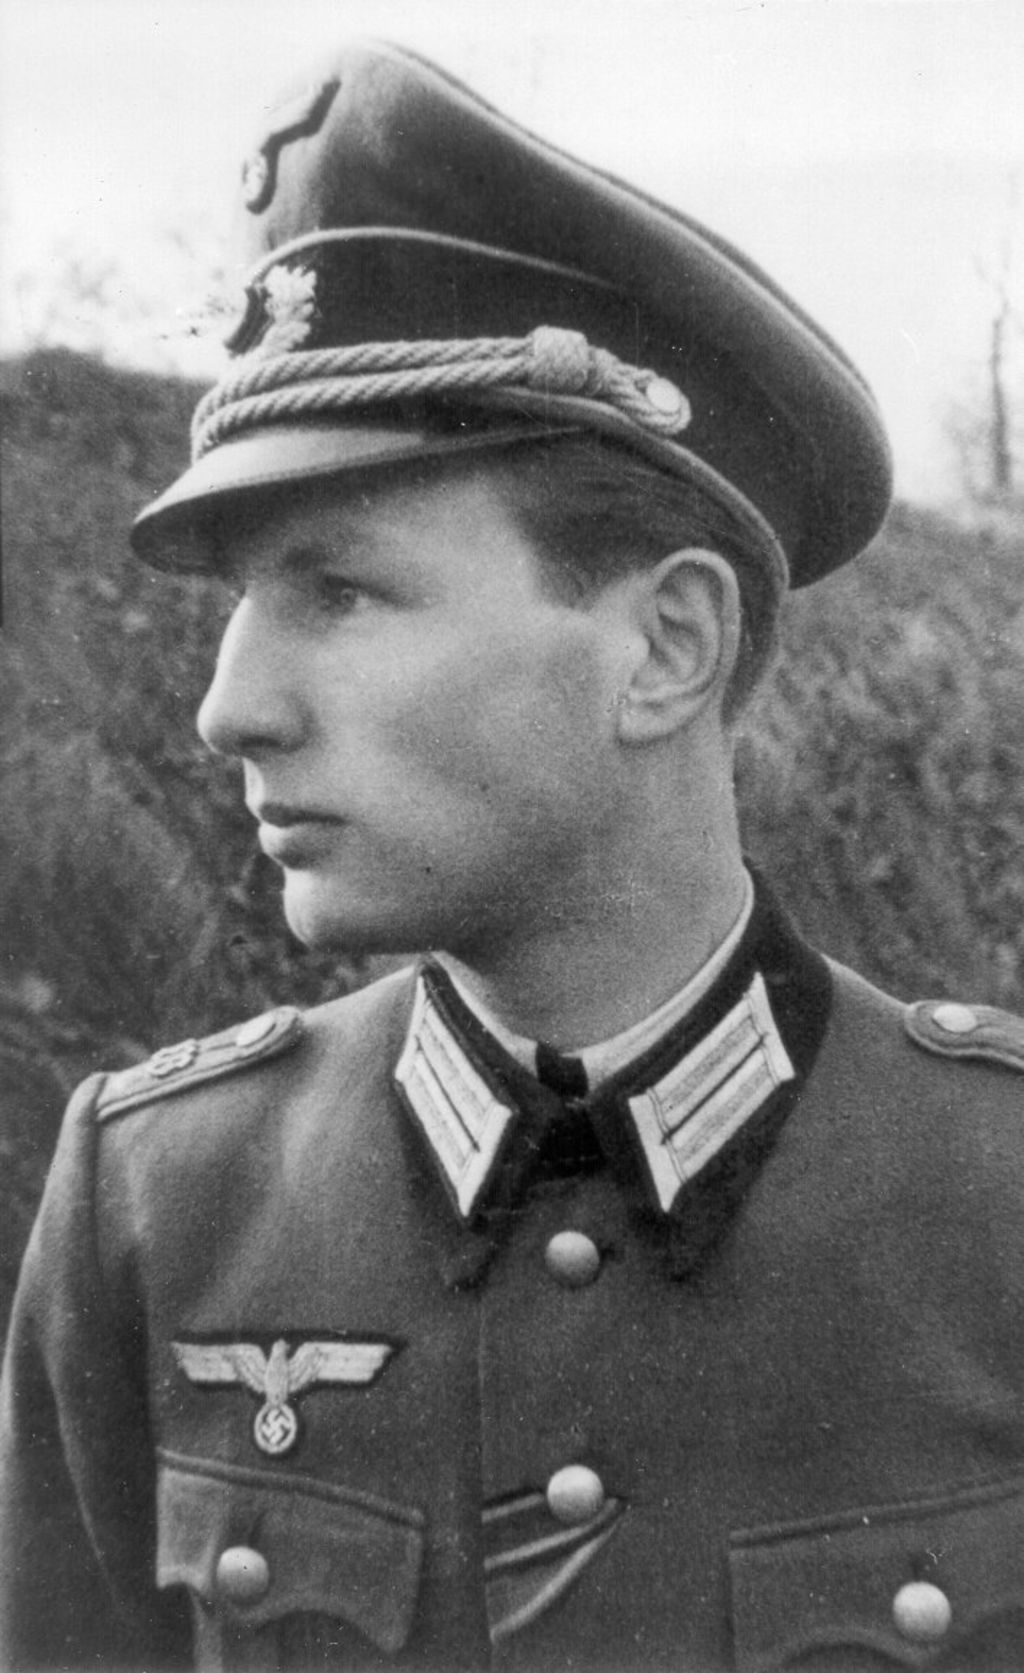 Foto: Jaeger, Krafft WErner, 1940-1944